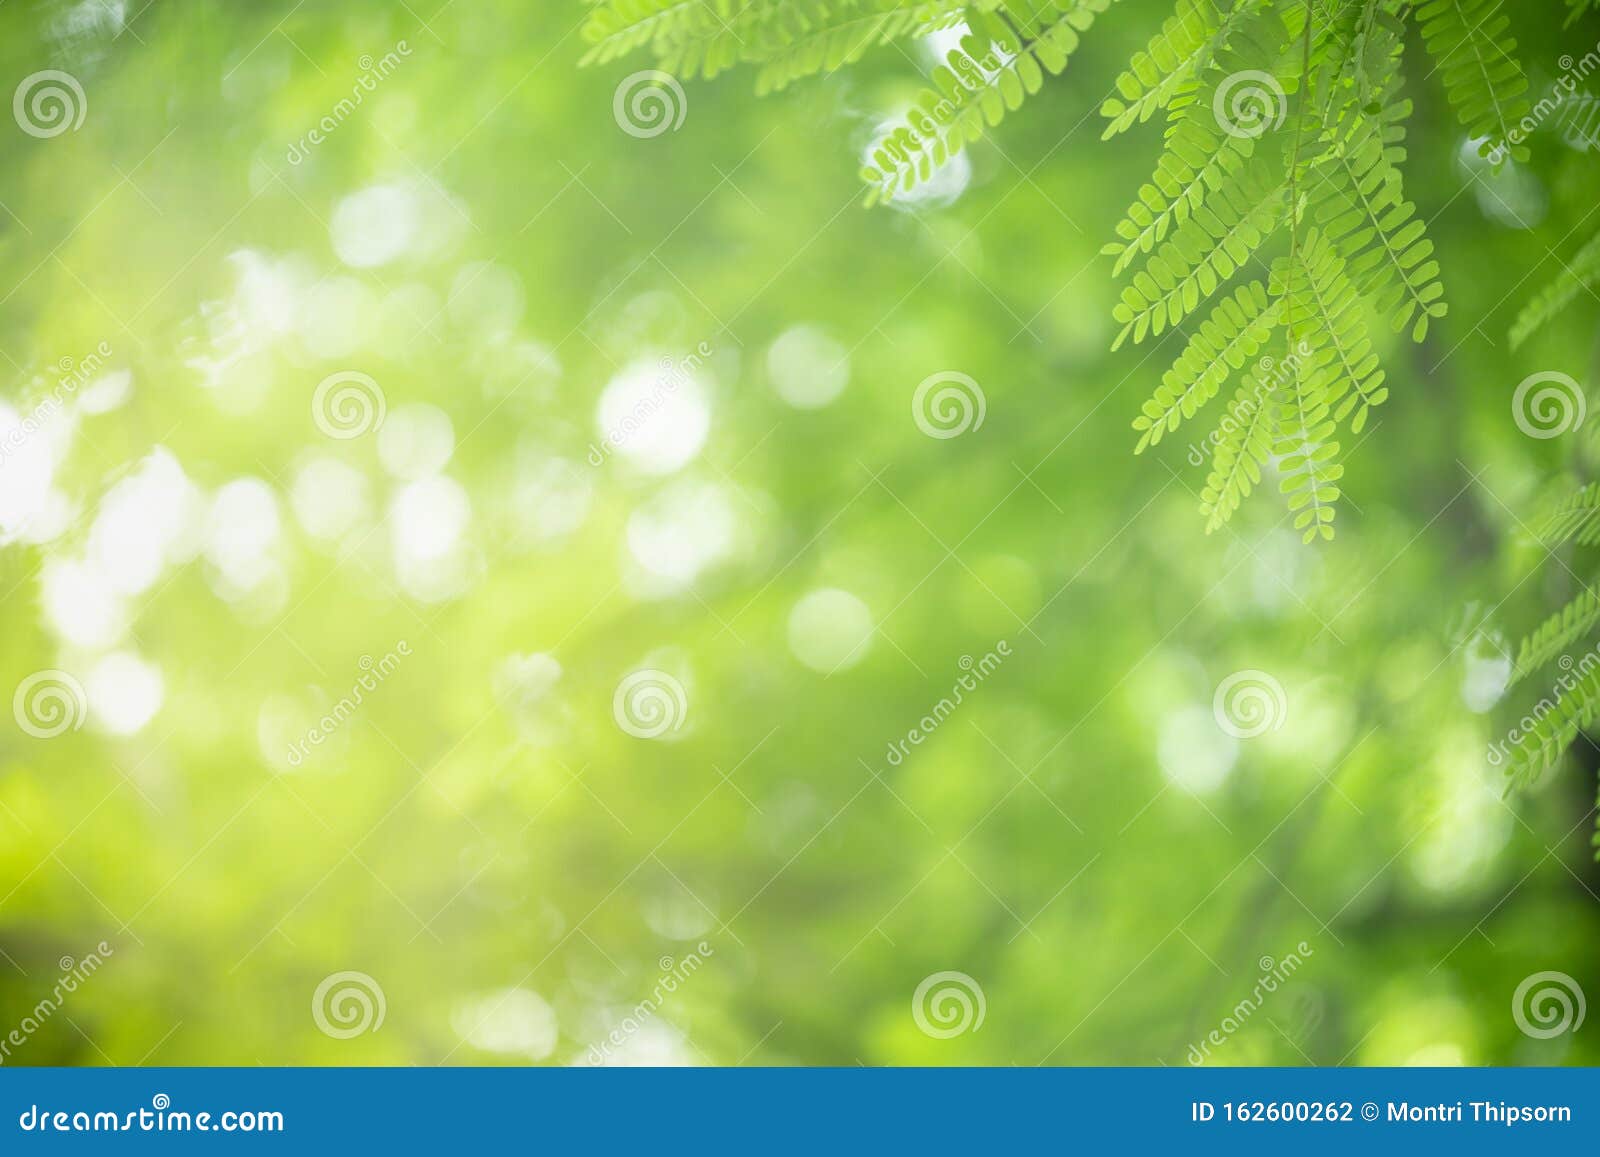 Tầm nhìn tự nhiên lá cây xanh trên nền nước xanh mờ: Bạn có bao giờ muốn thoát khỏi nhịp độ của thành phố để thưởng thức thiên nhiên tươi đẹp? Hãy cùng tận hưởng tầm nhìn tự nhiên lá cây xanh trên nền nước xanh mờ của bức hình này. Hãy cùng lạc vào không gian xanh và thư giãn sau những giờ làm việc căng thẳng.